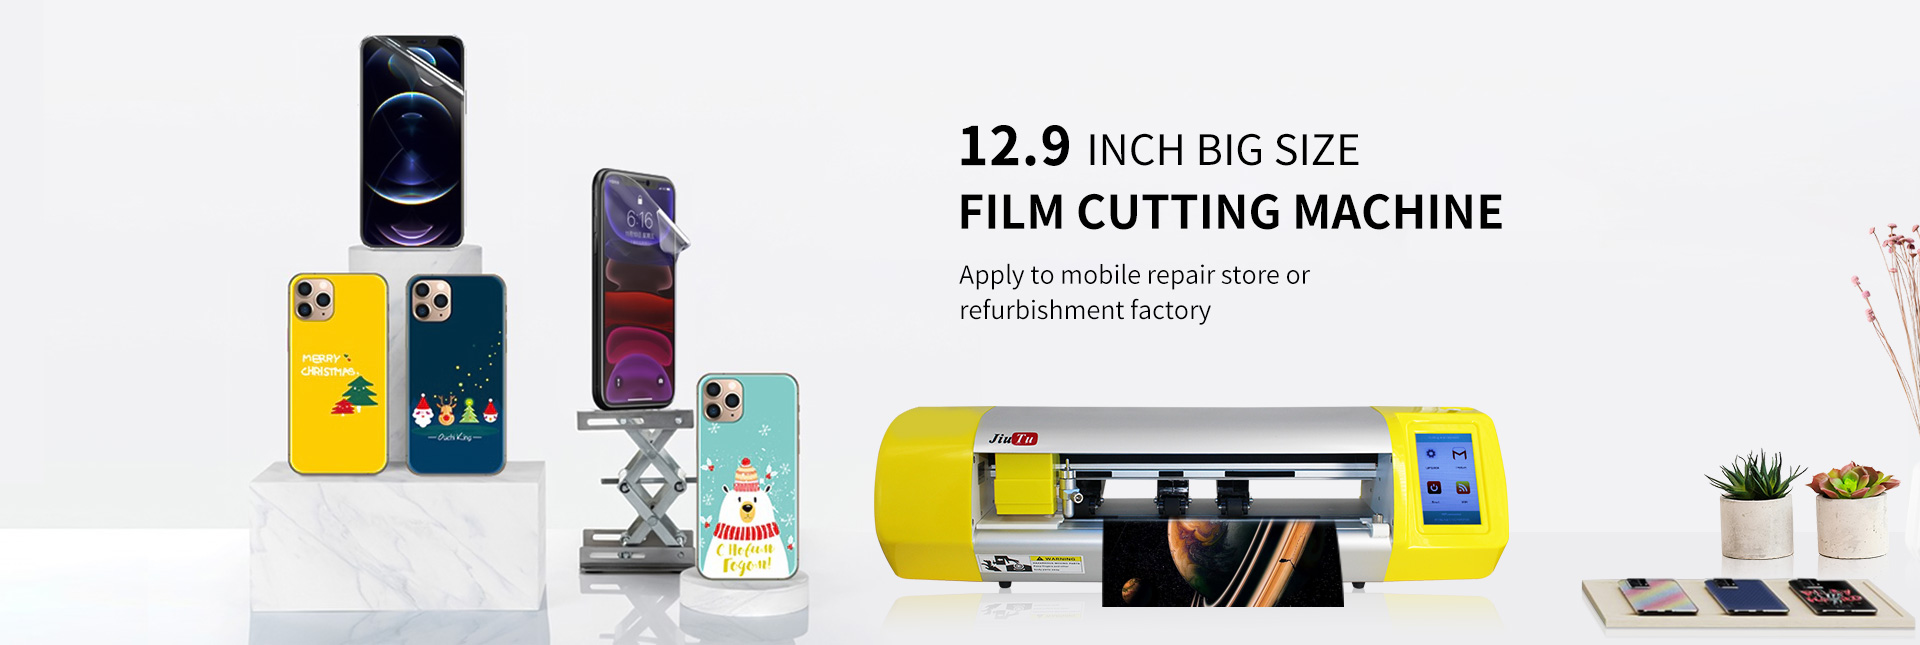 film cutting machine